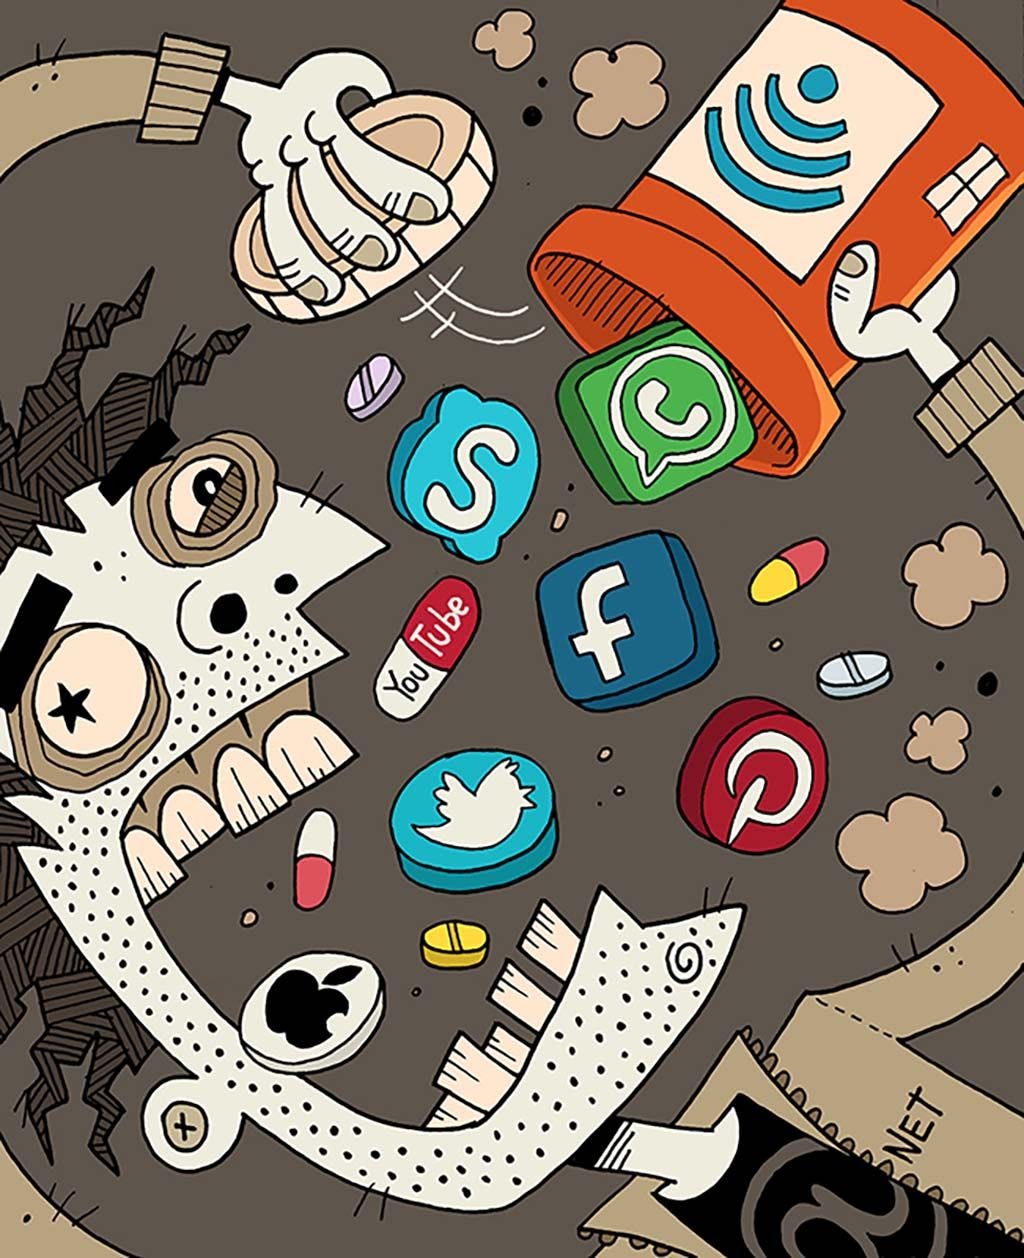 Our Social Media Addiction